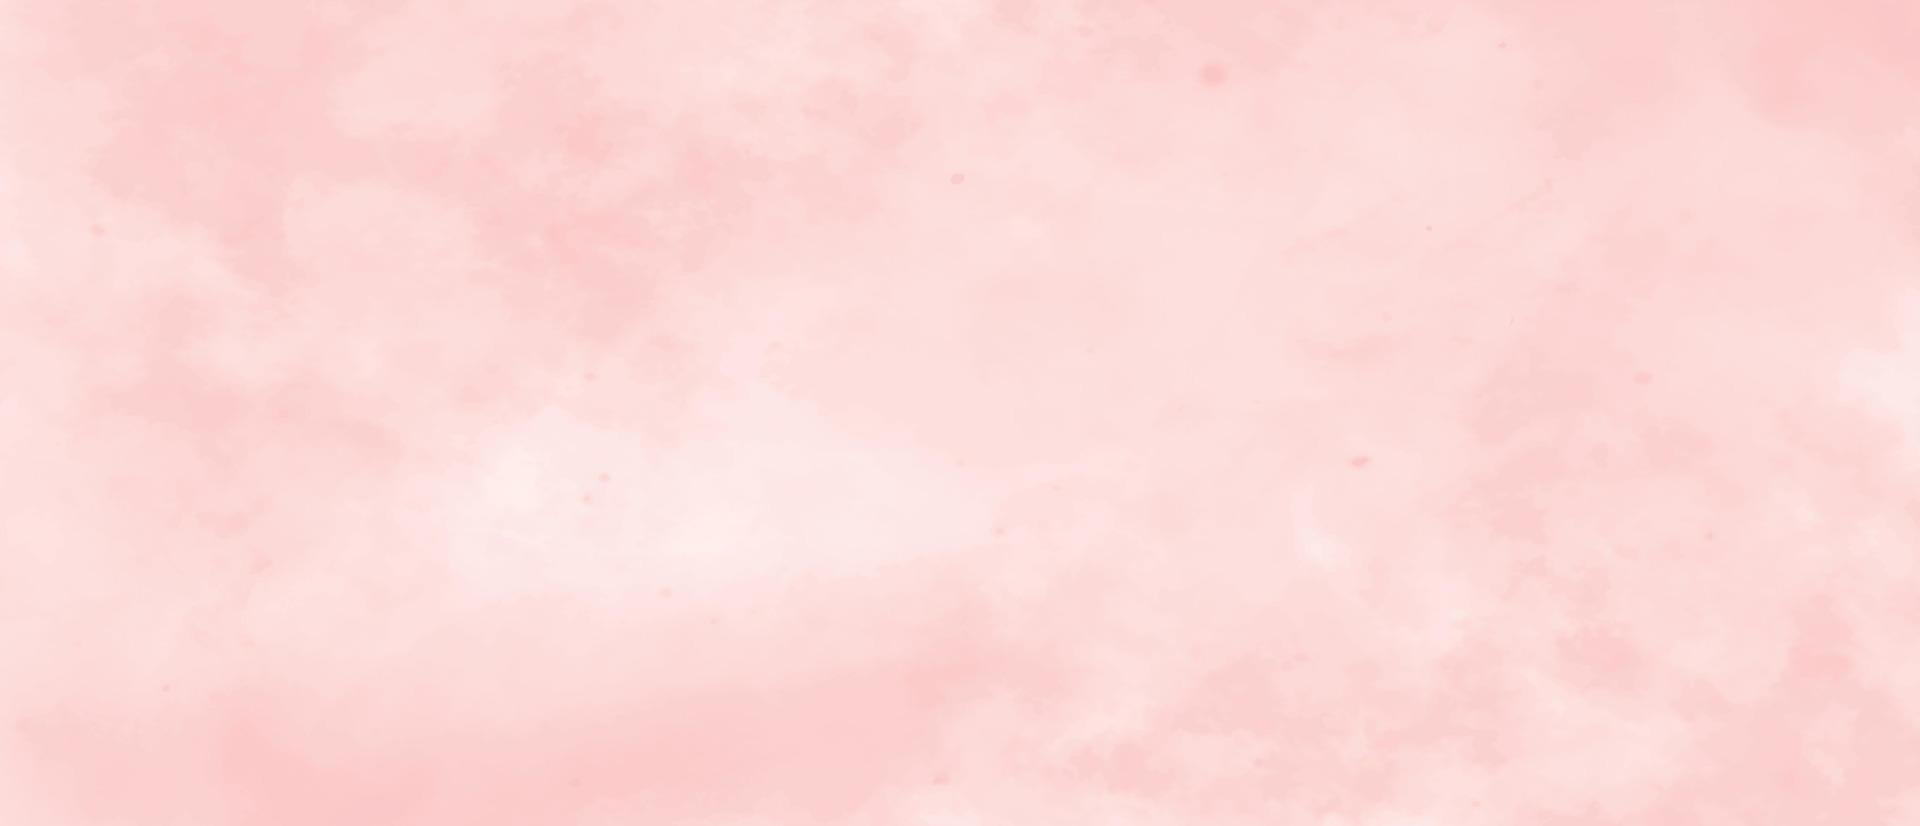 pedra interior de fundo de textura de mármore rosa. fundo de cor coral. aquarela abstrata. copie o espaço. fundo pastel vinho. padrão de tintura de gravata grunge moderno. impressão de mármore feminino. vetor